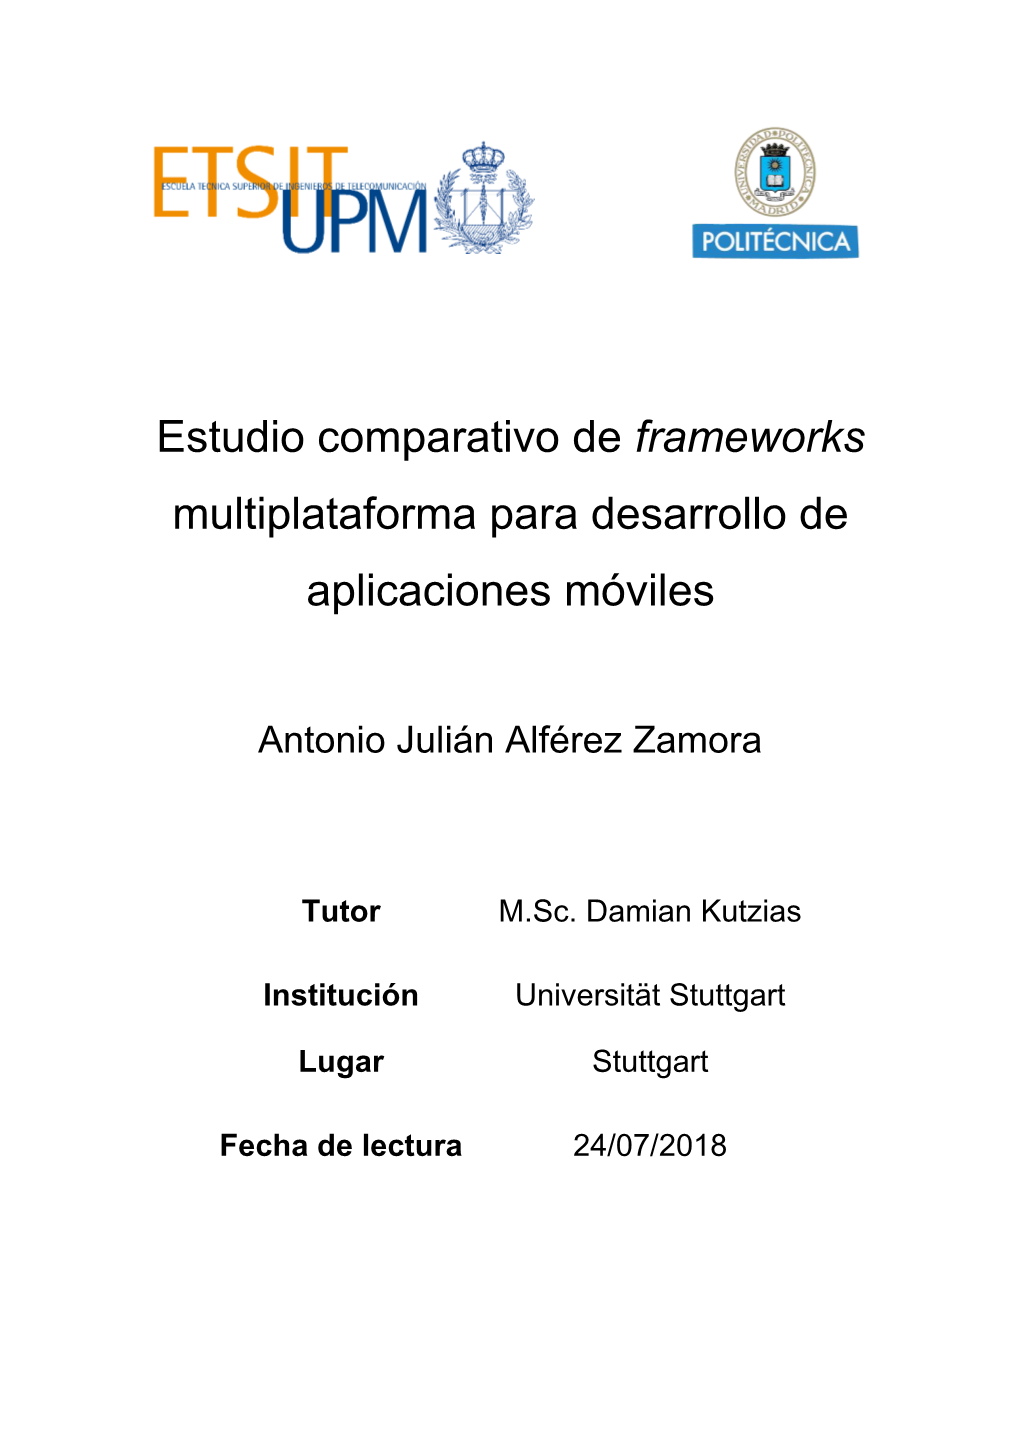 Estudio Comparativo De Frameworks Multiplataforma Para Desarrollo De Aplicaciones Móviles